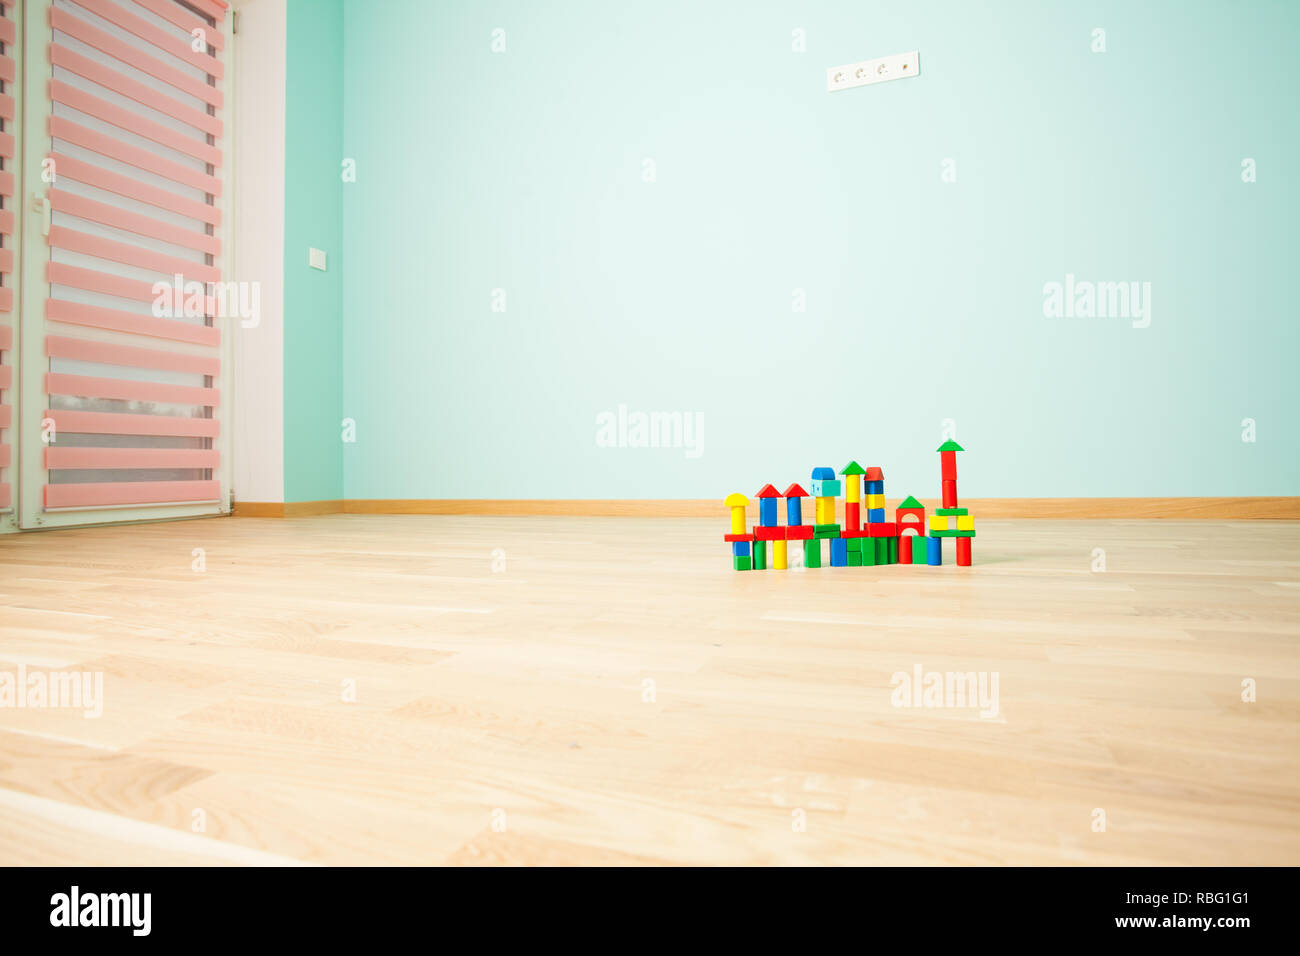 Spaß Kind Zimmer im skandinavischen Stil eingerichtet, mit viel Raum zum  Arbeiten und Spaß Zubehör Stockfotografie - Alamy